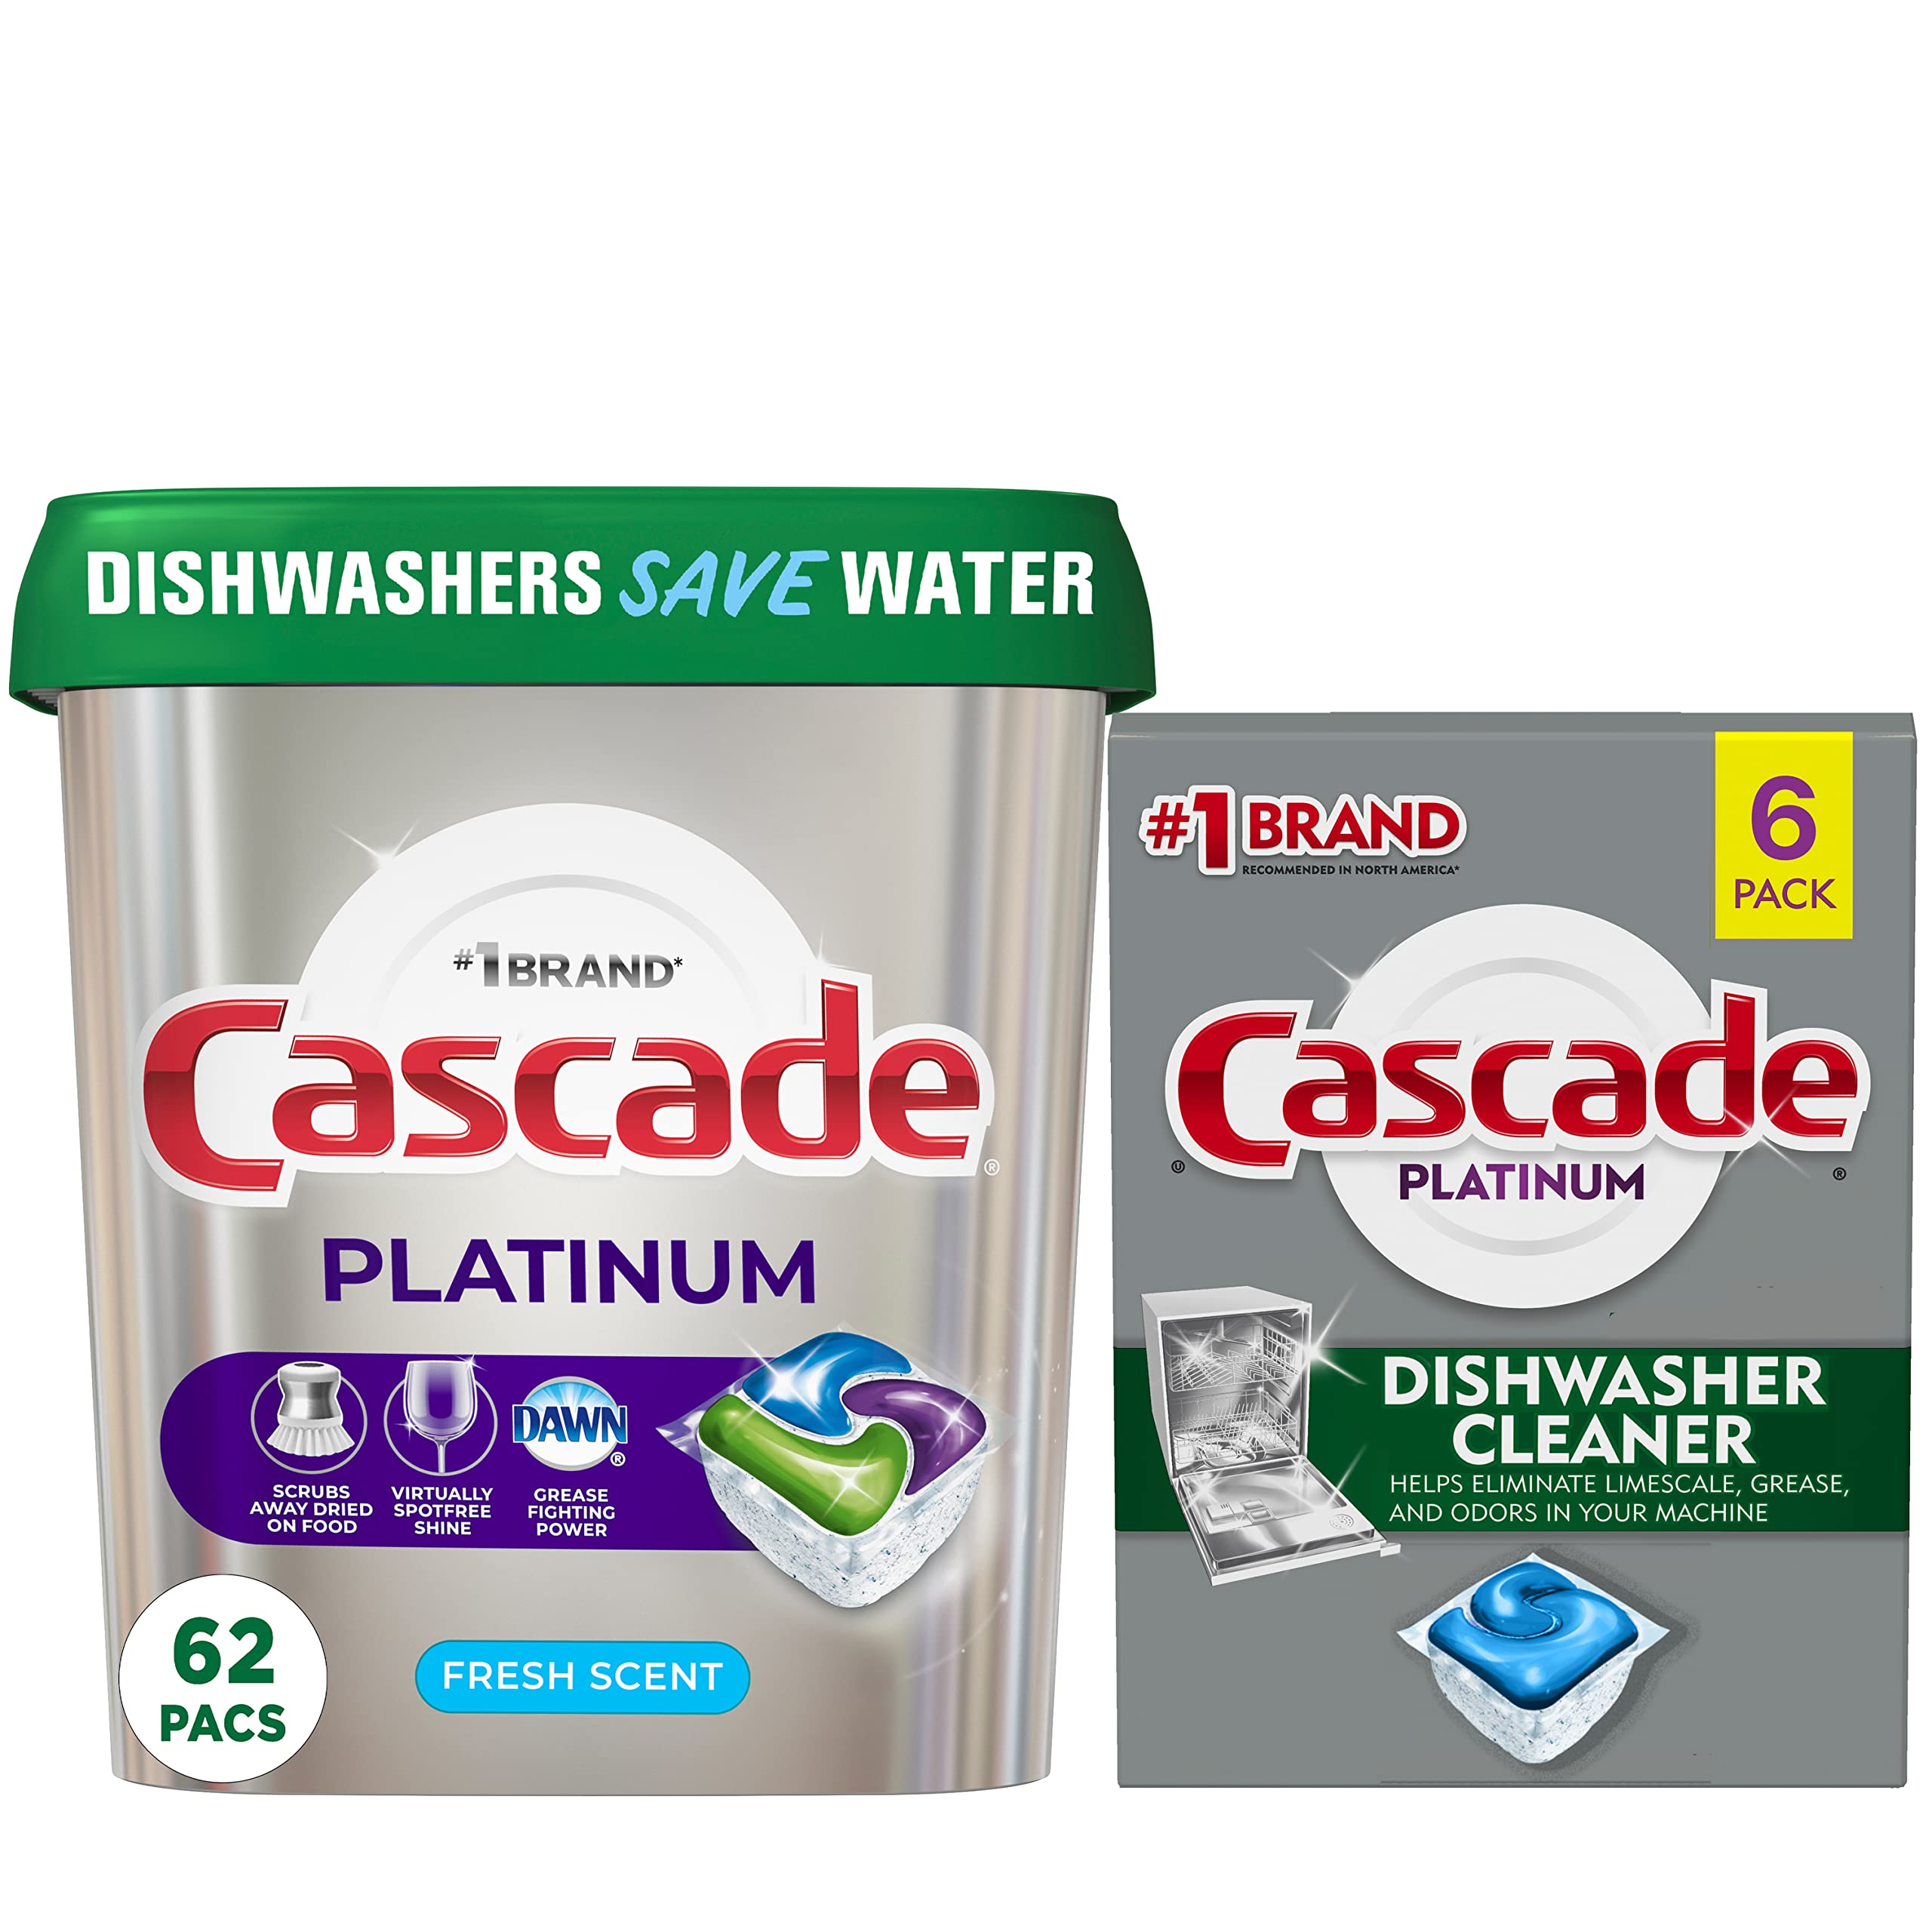 Cascade Platinum Dishwasher Pods and Dishwasher Cleaner Dishwashing Bundle